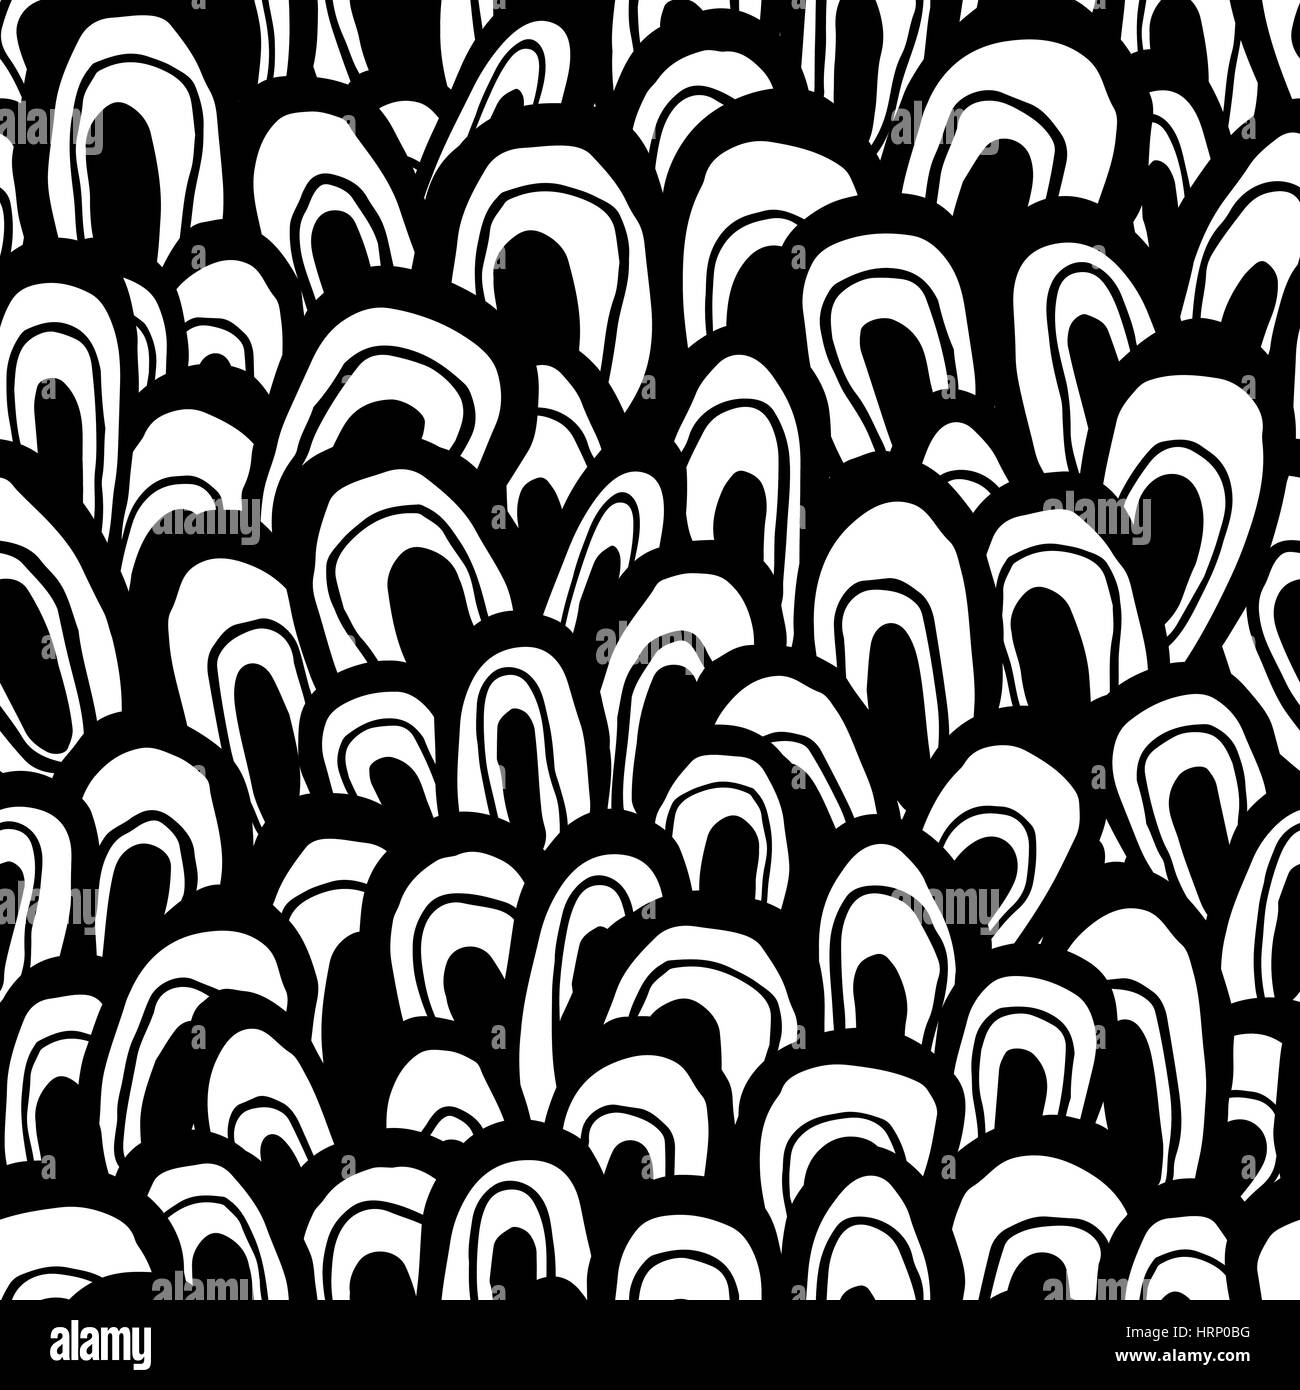 Nahtlose abstrakte Muster. Handgefertigte Formen, sieht aus wie Wellen, Fisch Skala oder Wald, schwarz und weiß Farben. Entspannte Geometrie. Textil-Design. Stock Vektor